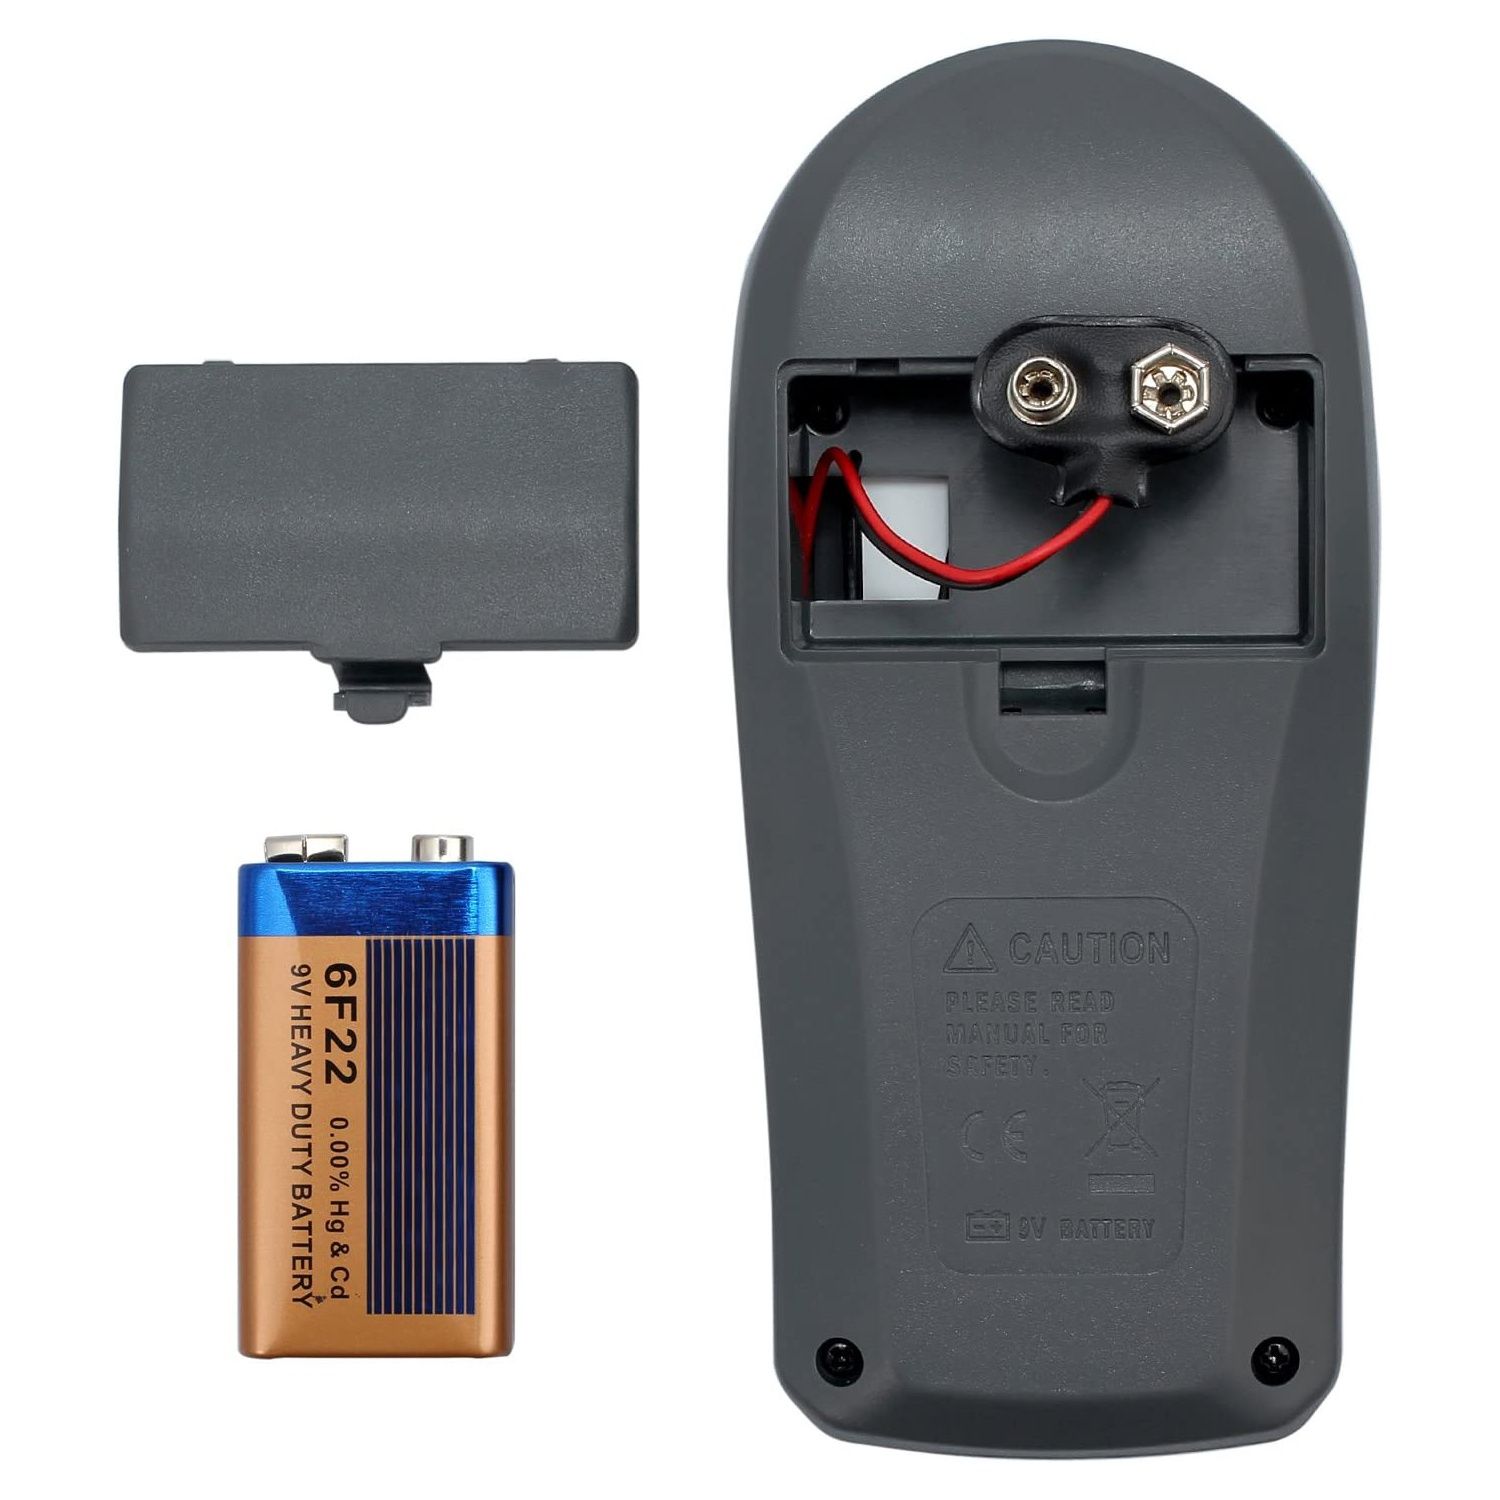 Luximetro Digital Medidor De Iluminação Profissional Mt-30 +Bateria 9V